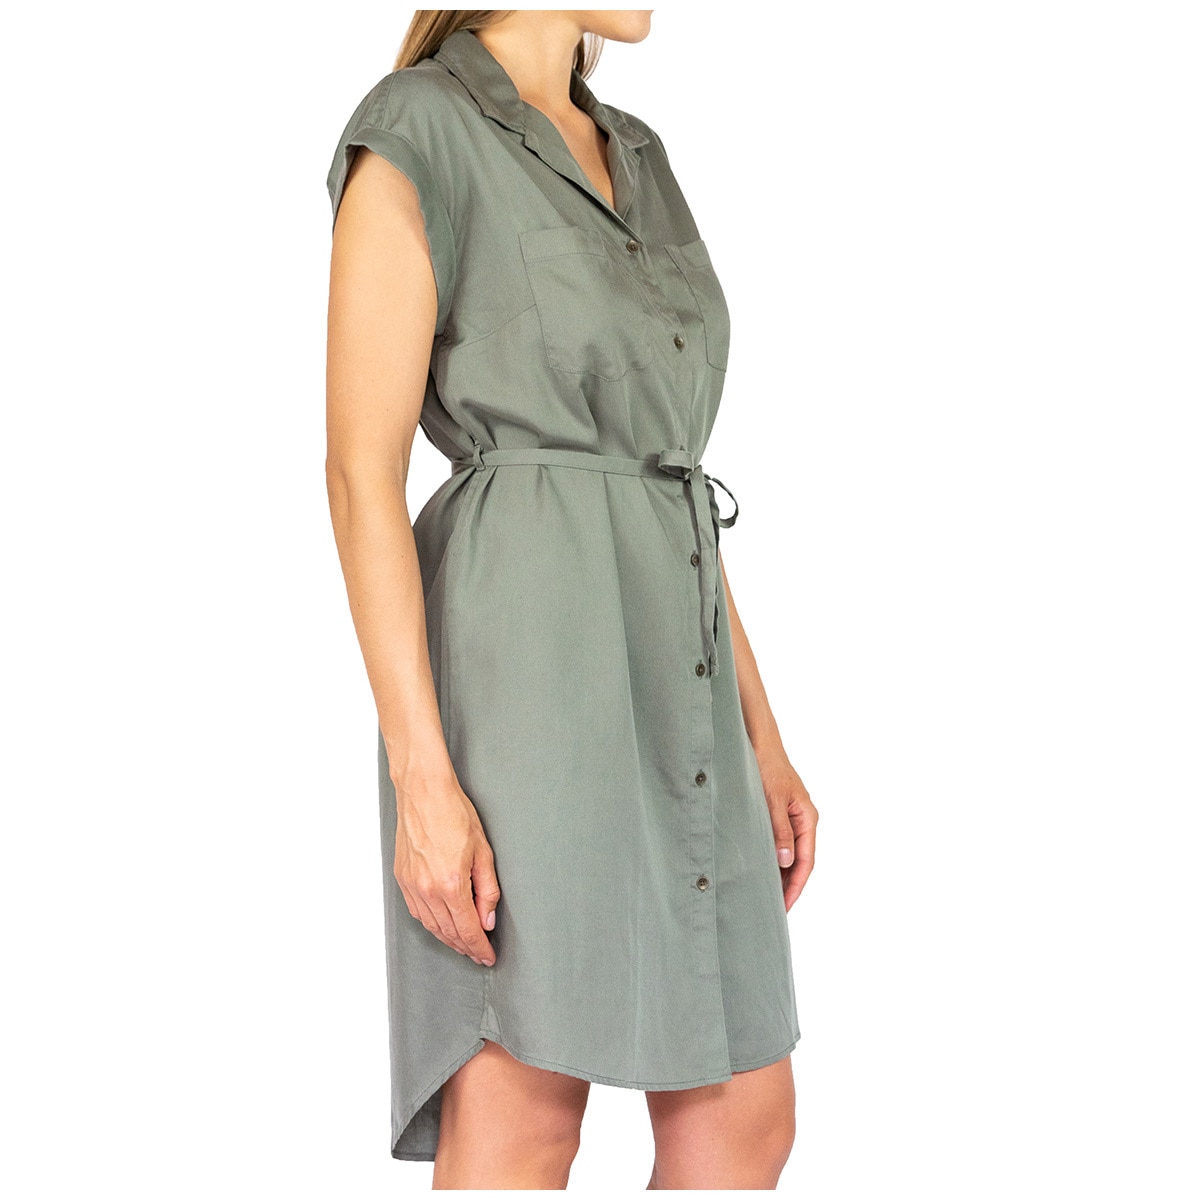 JACH's Women's Tencel Dress - Olive